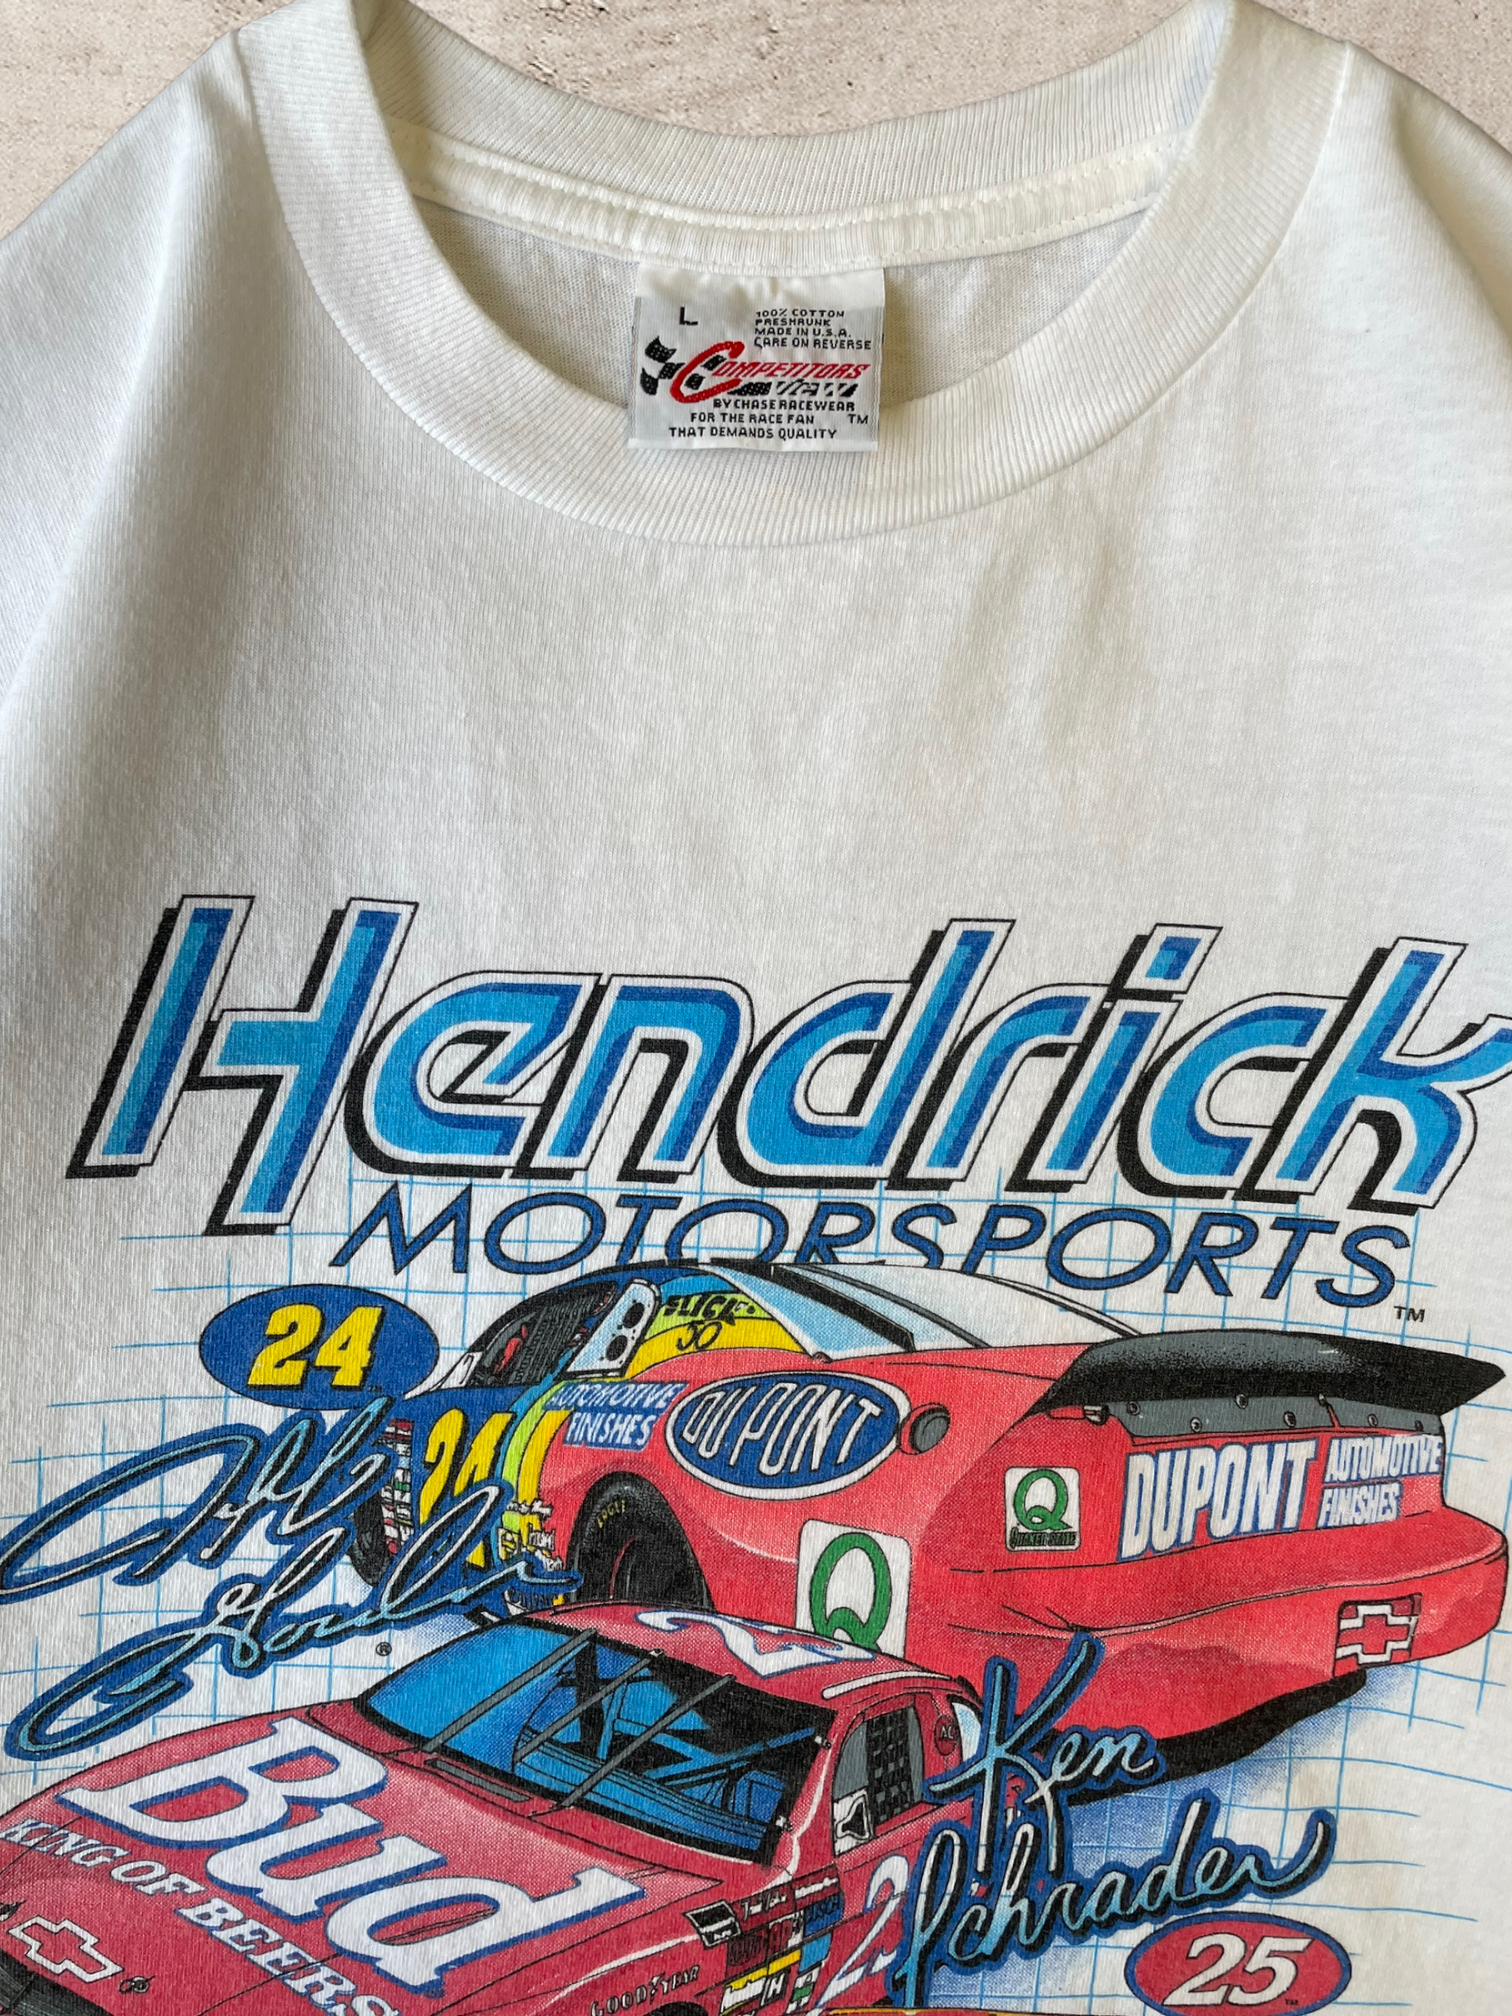 1996 ヘンドリック モータースポーツ レーシング T シャツ - L